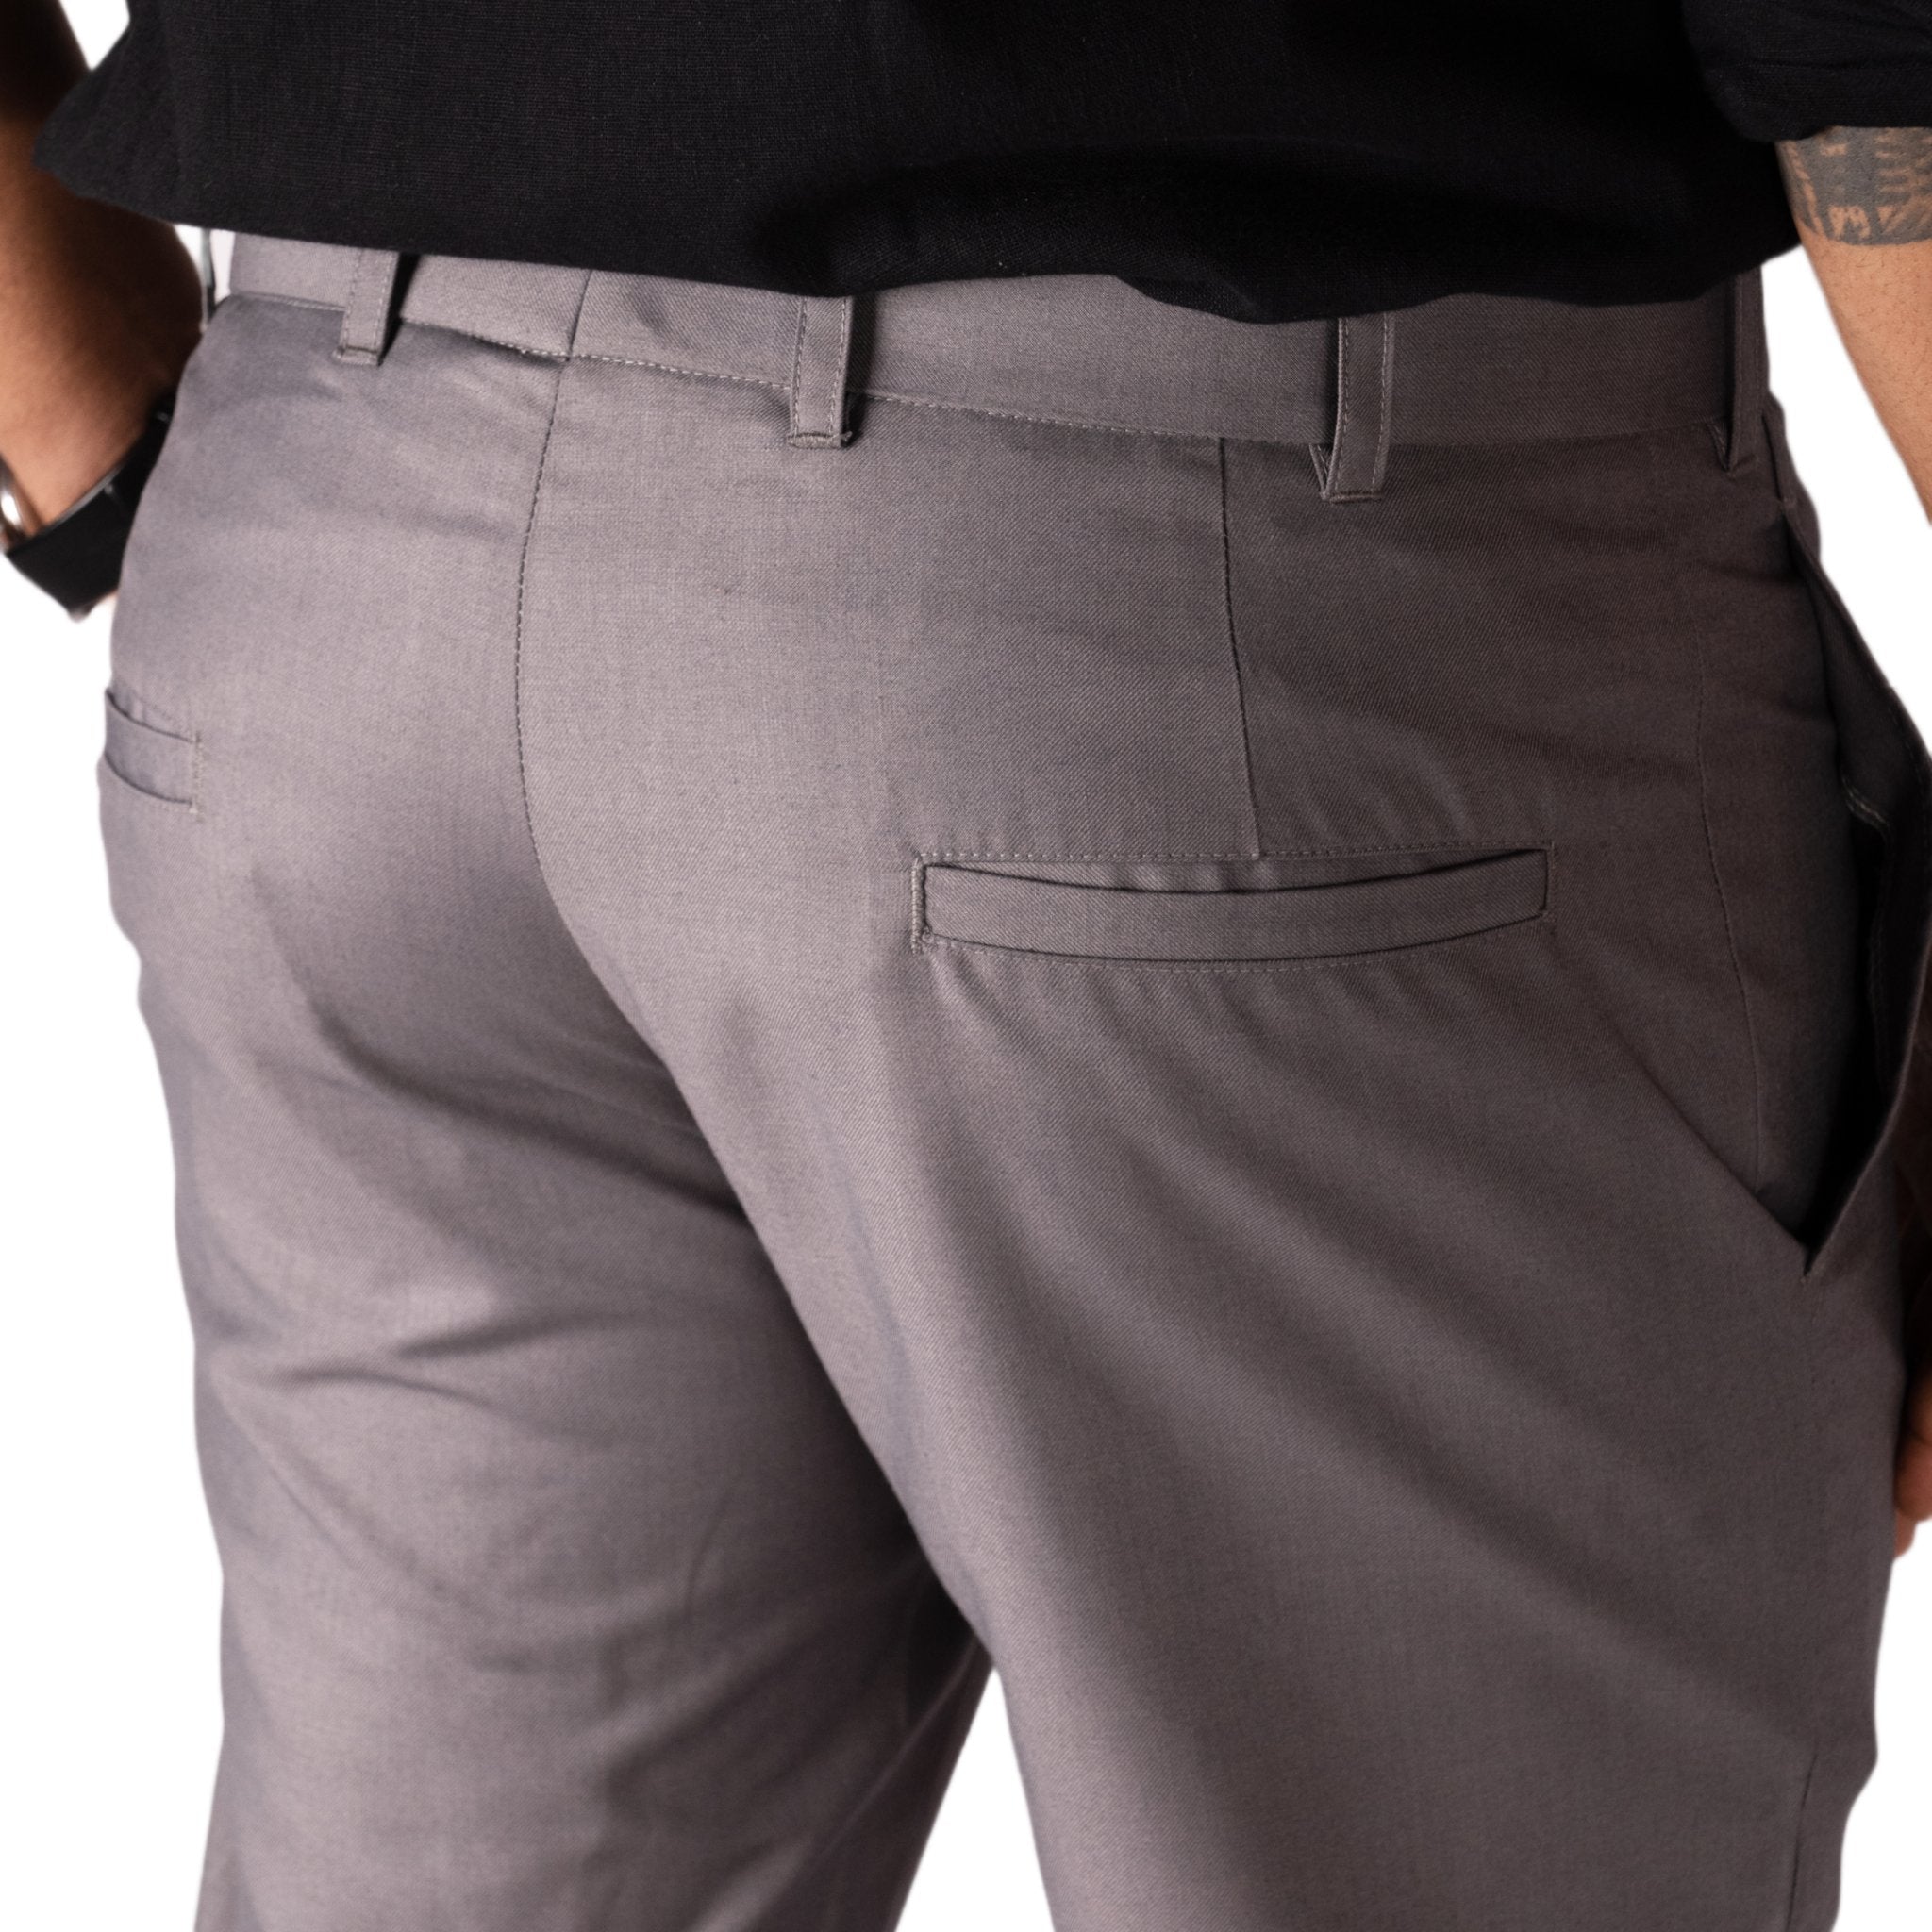 Ermanno Scervino Light Gray Straight Cotton Men's Pants | Cotton pants,  Ermanno scervino, Straight pants